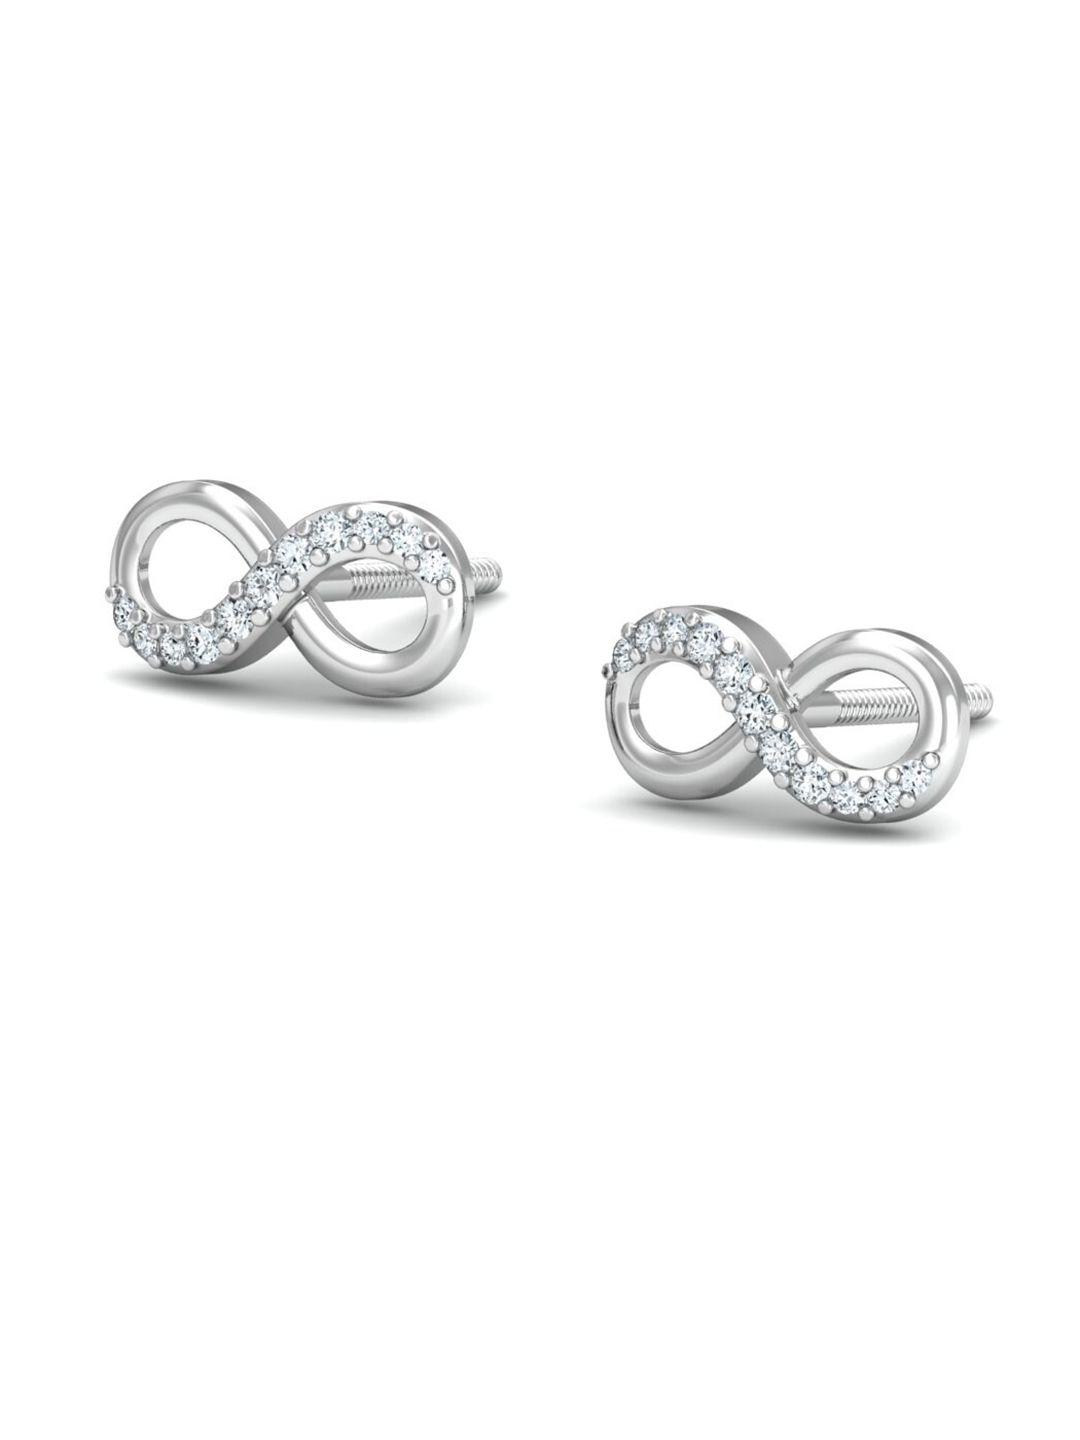 kuberbox 18kt white gold diamond-studded earrings - 1.11gm